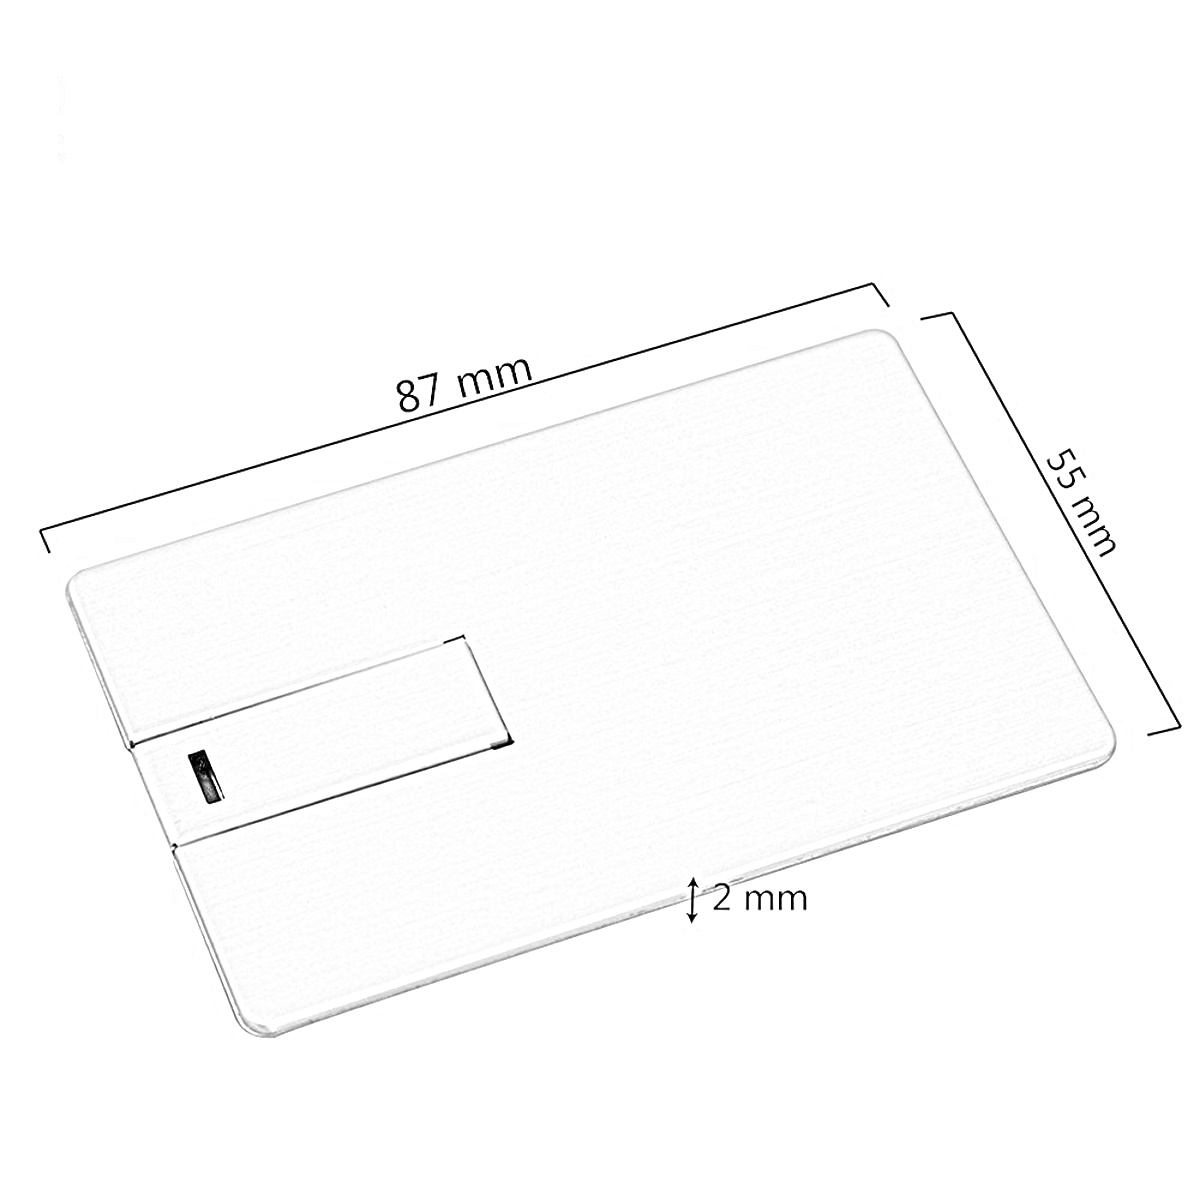 USB GERMANY ® Metall-Kreditkarte USB-Stick GB) 2 (Schwarz